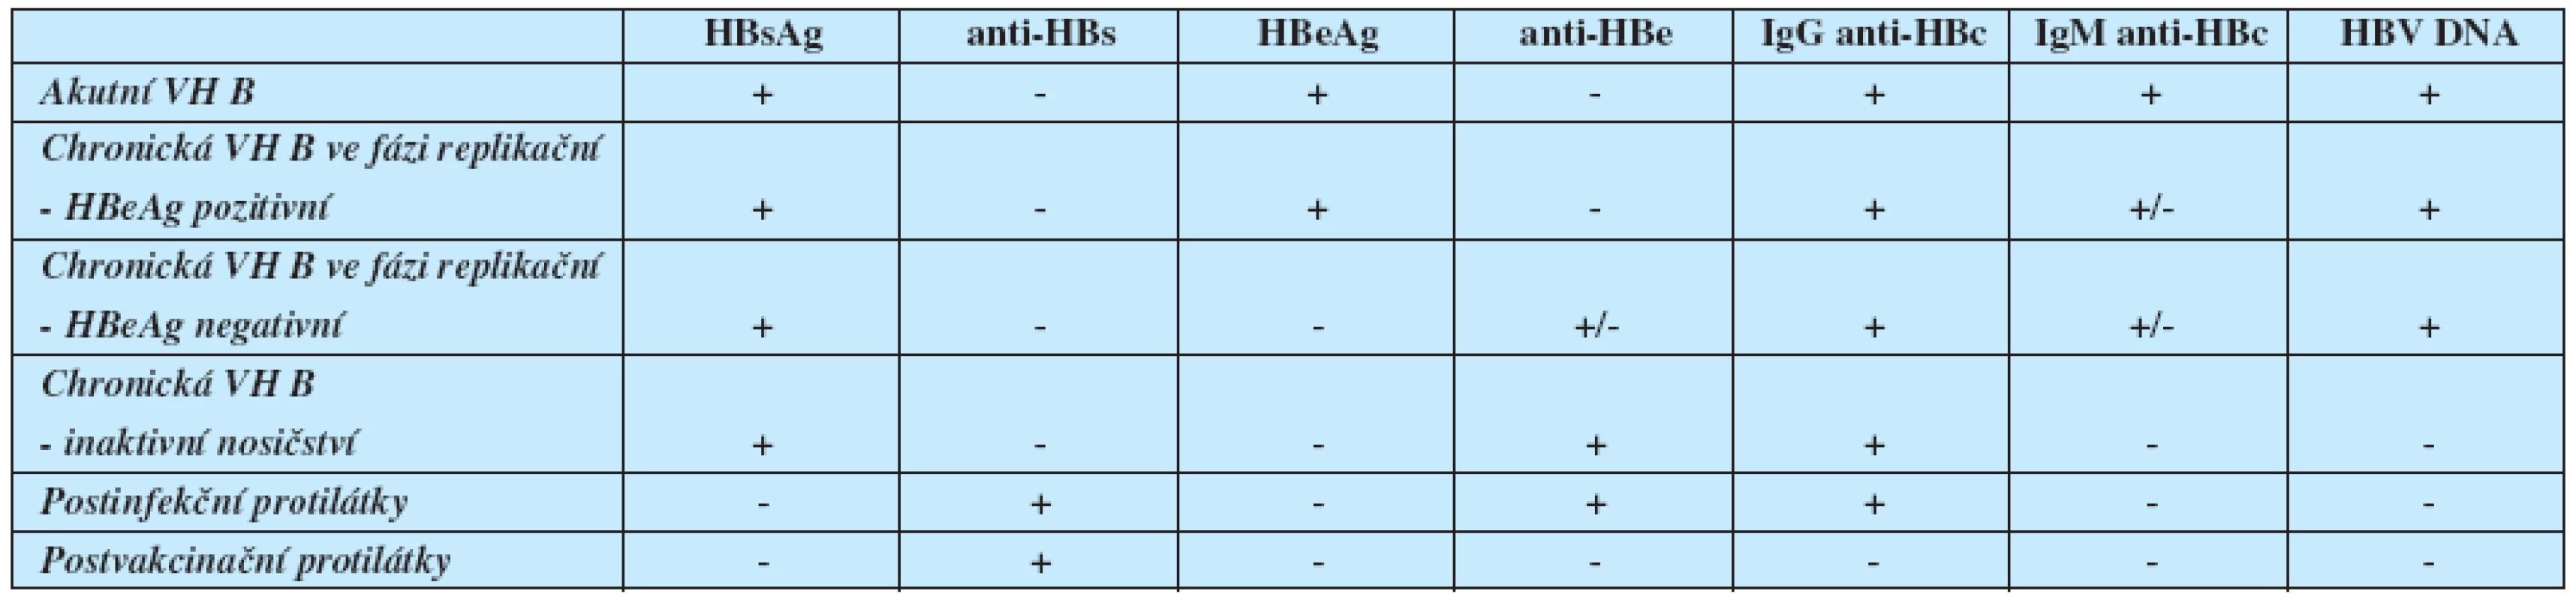 Typické sérologické a molekulárně genetické nálezy jednotlivých stadií přirozeného vývoje infekce HBV